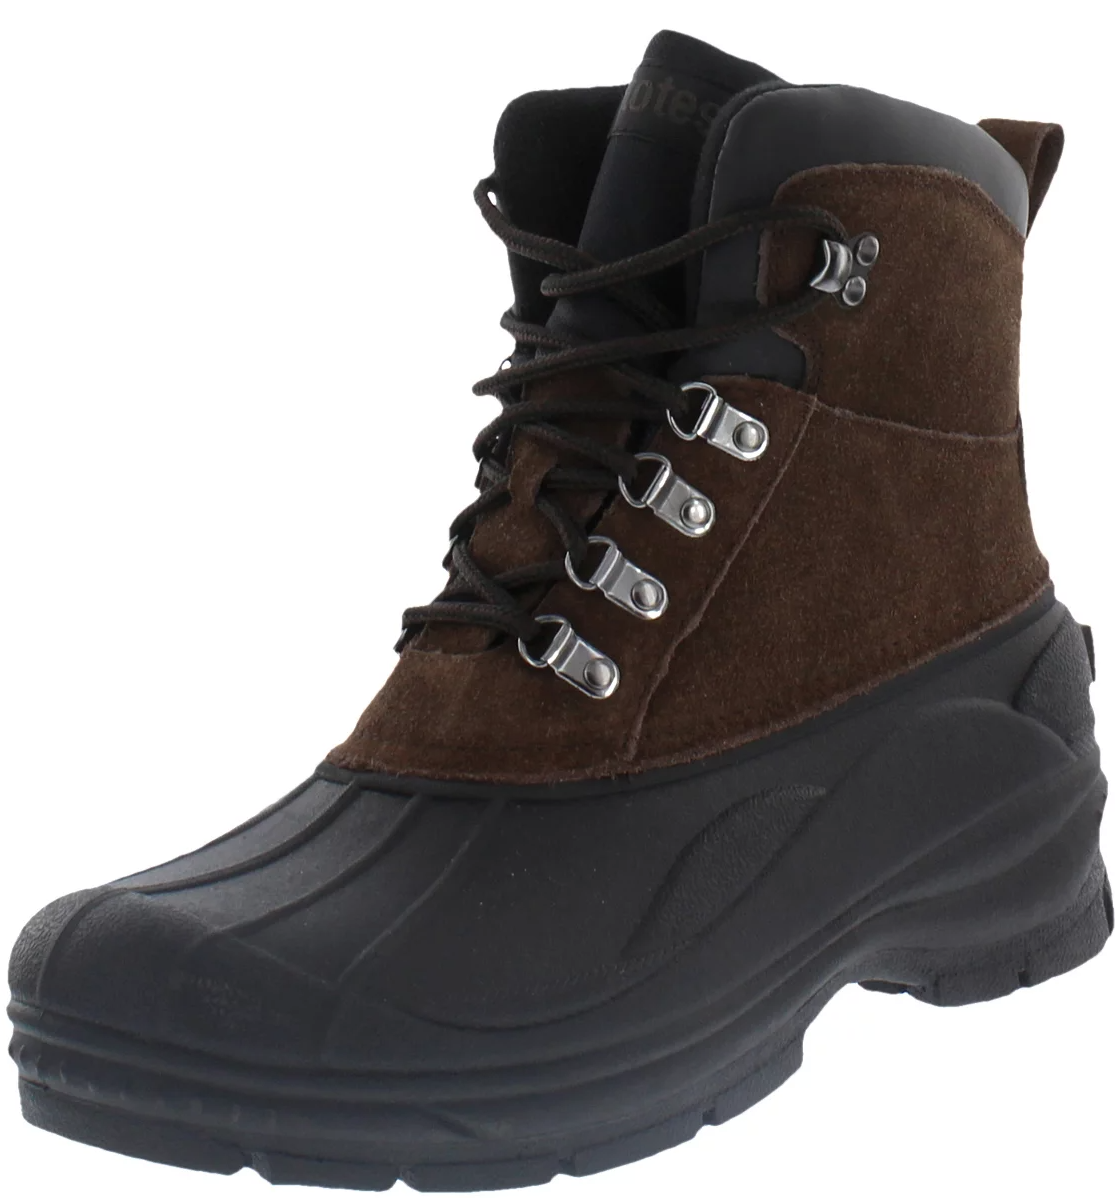 Totes Men's Glacier Waterproof Front Zip Winter Boots - Wide Width Available - Walmart.com - $18.50